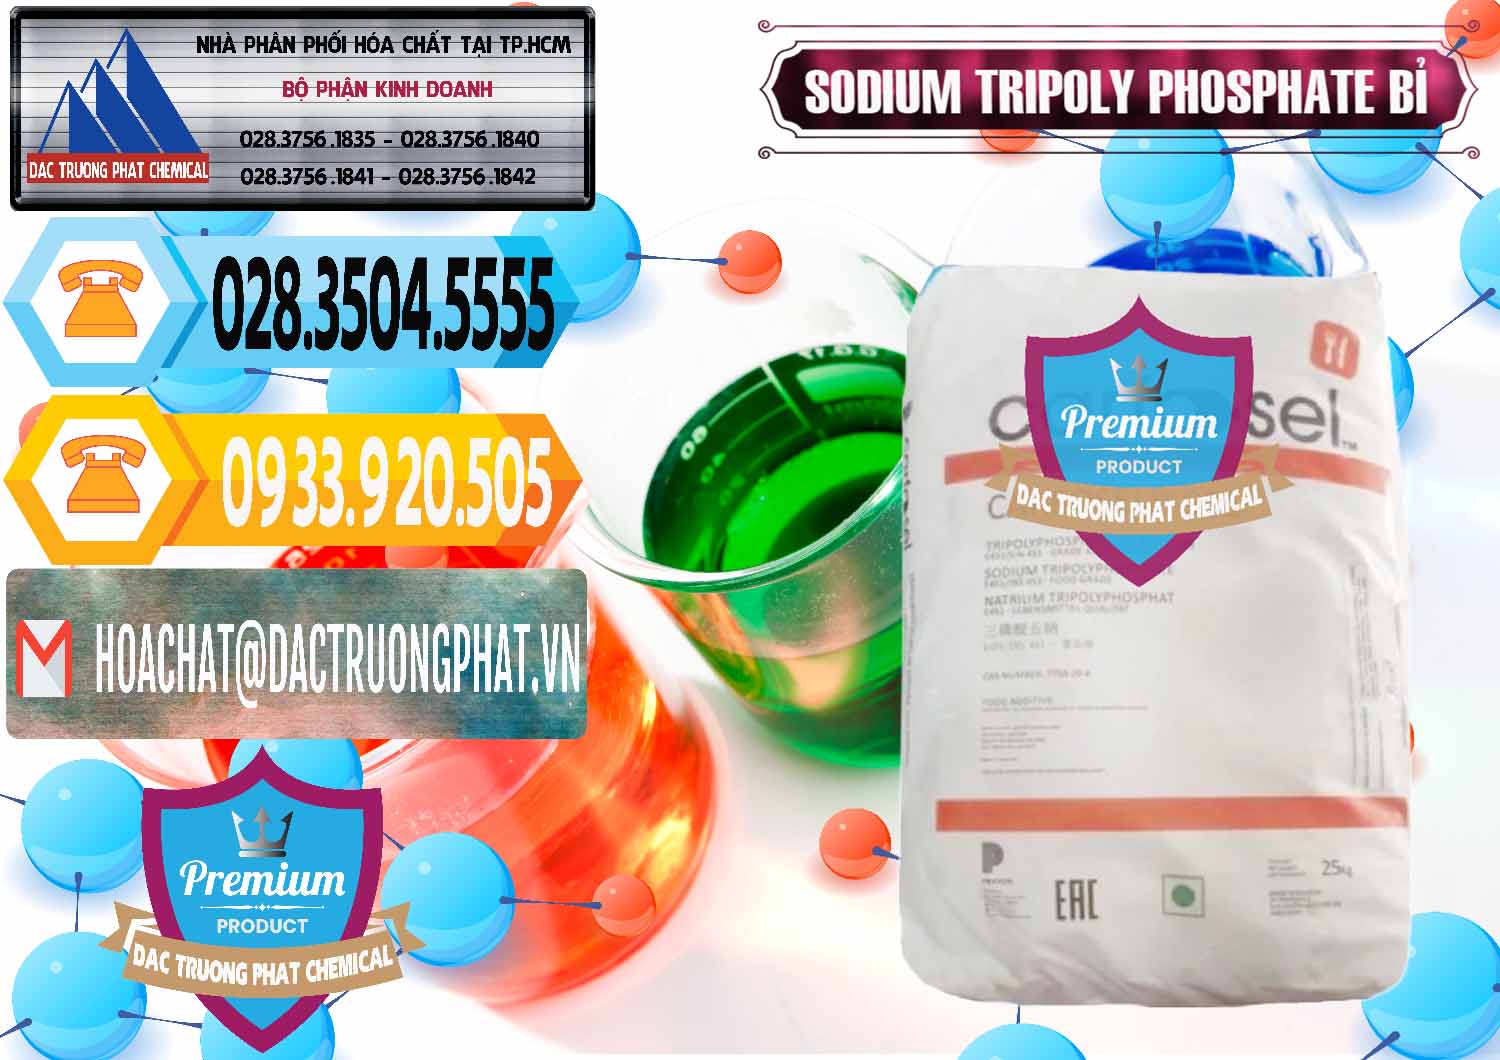 Cty chuyên bán - cung cấp Sodium Tripoly Phosphate - STPP Carfosel 991 Bỉ Belgium - 0429 - Cty chuyên phân phối _ cung ứng hóa chất tại TP.HCM - hoachattayrua.net